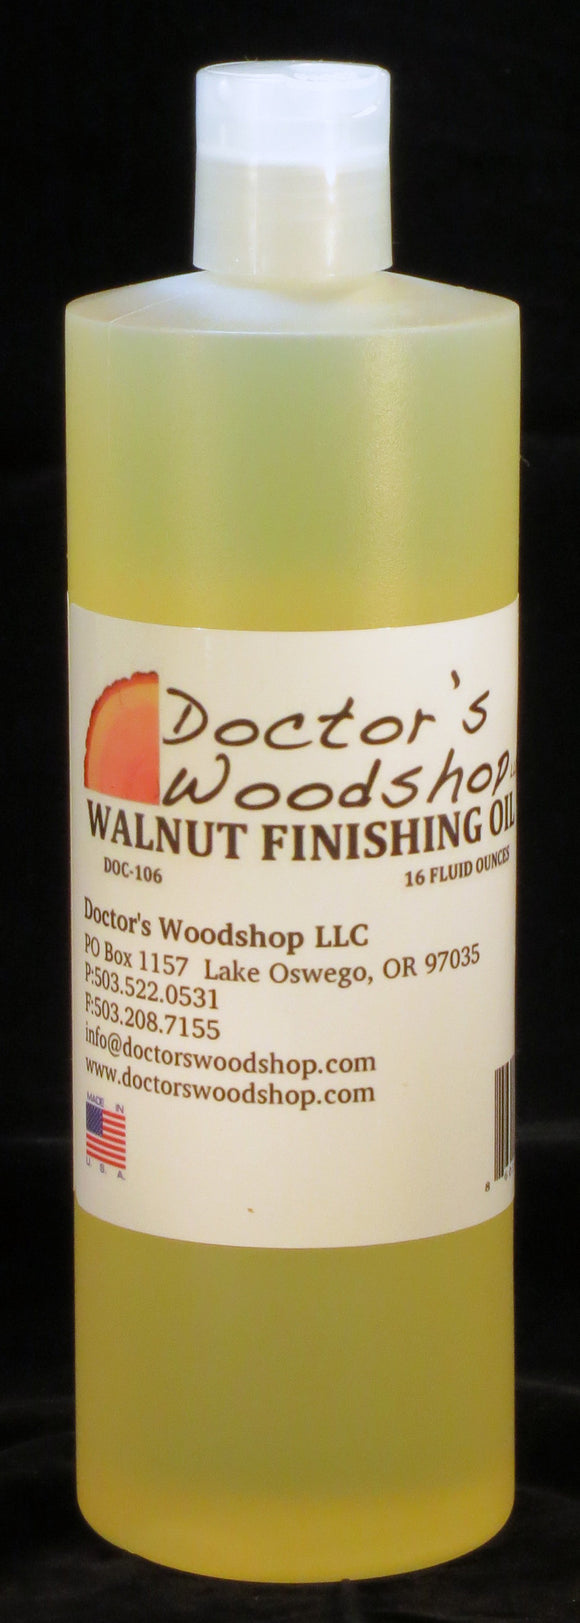 Doctor's Woodshop Walnut Finishing Oil Doc - 106